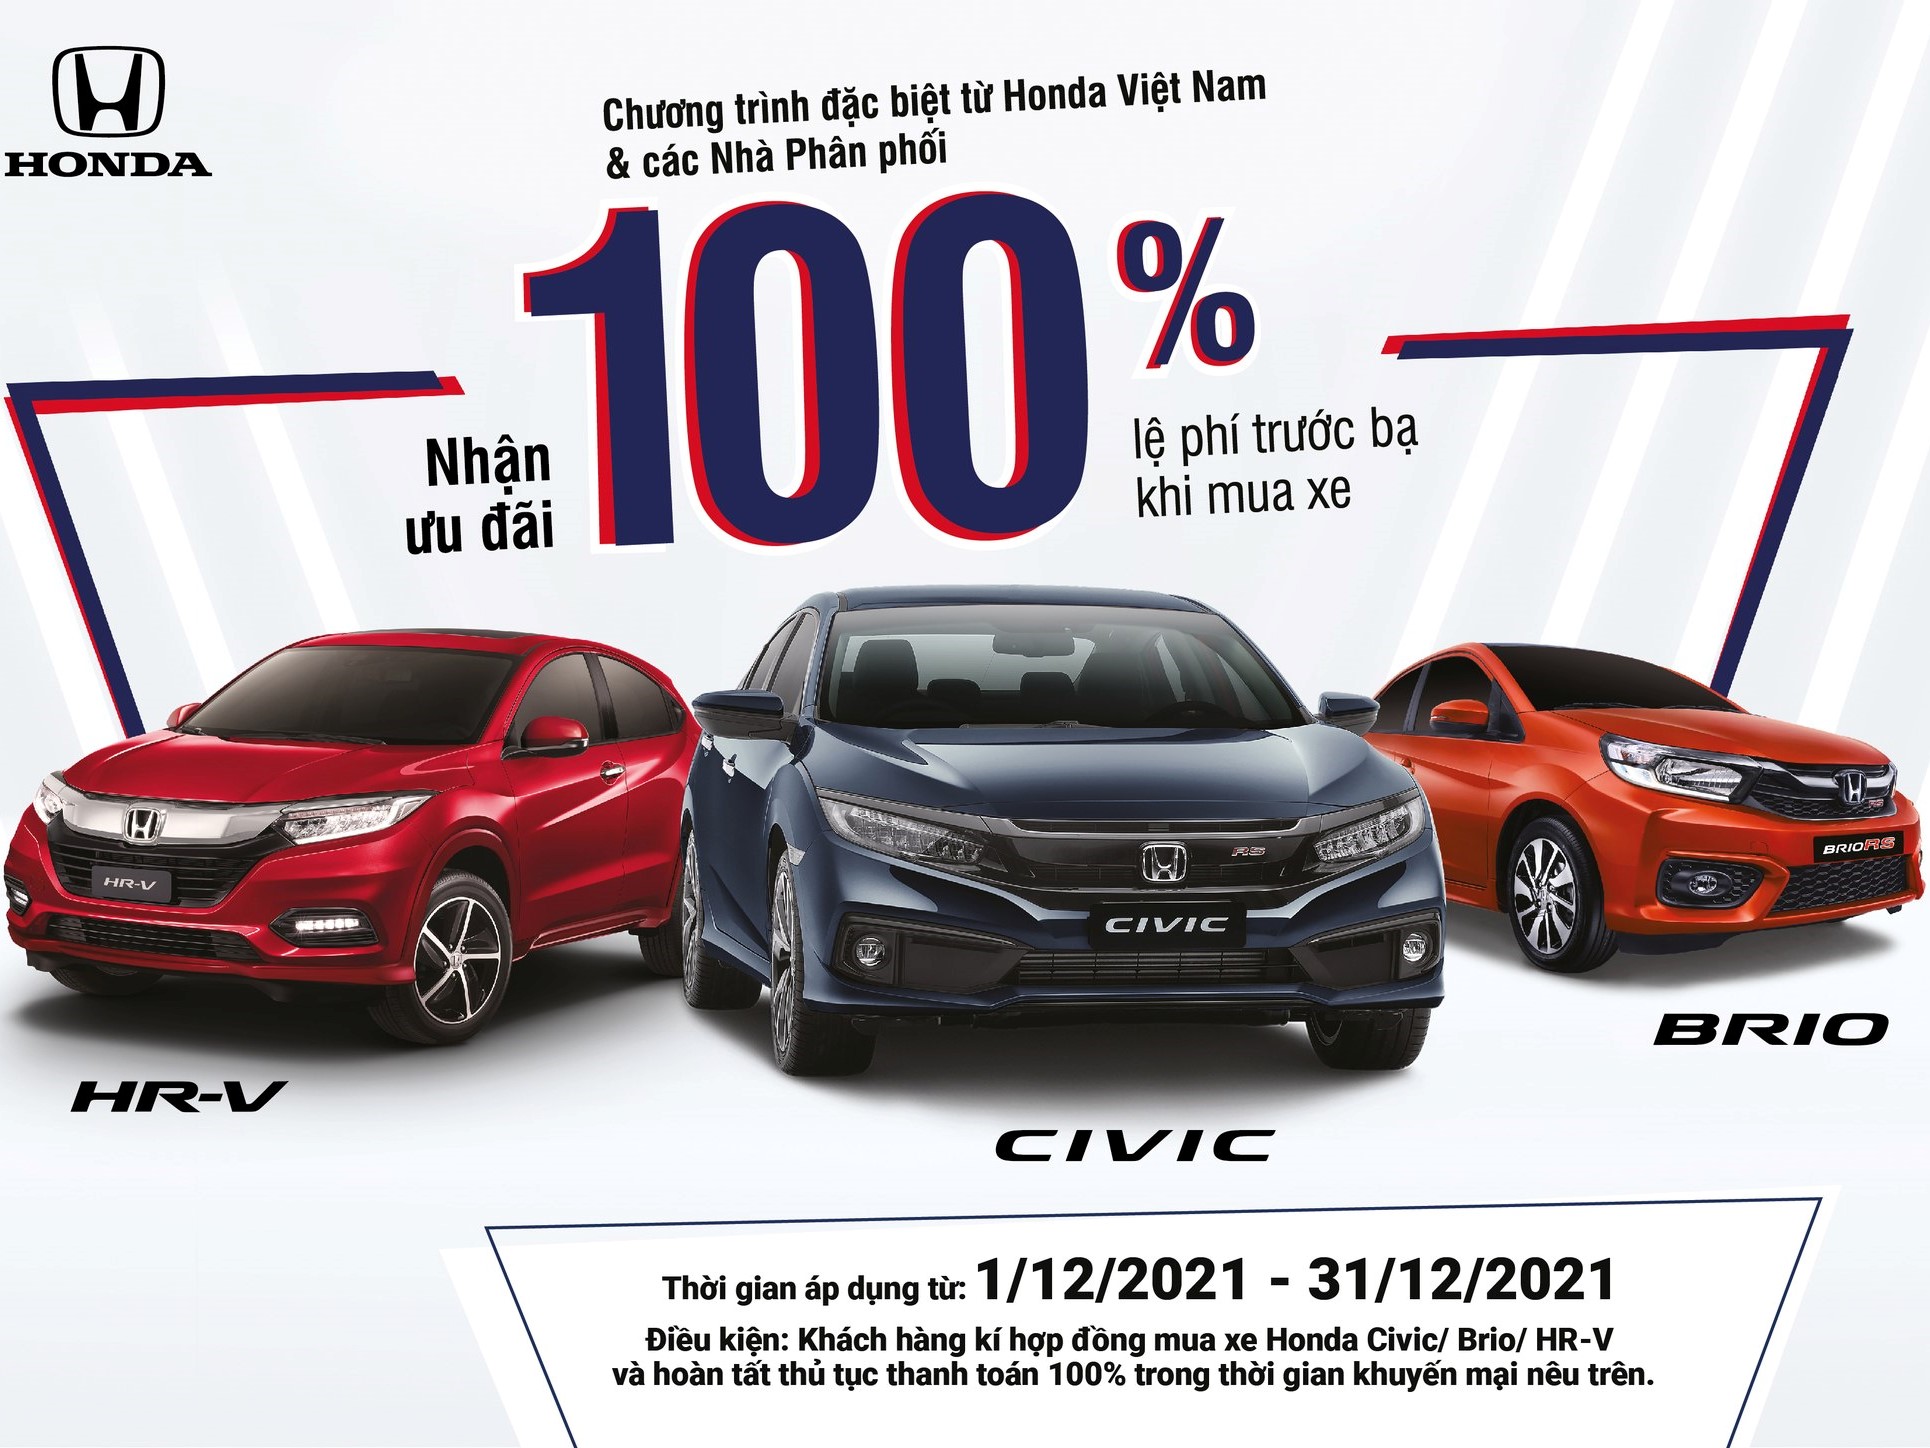 Hỗ trợ 100% lệ phí trước bạ cho khách hàng mua xe Honda Civic, Honda HR-V và Honda Brio trong tháng 12 năm 2021